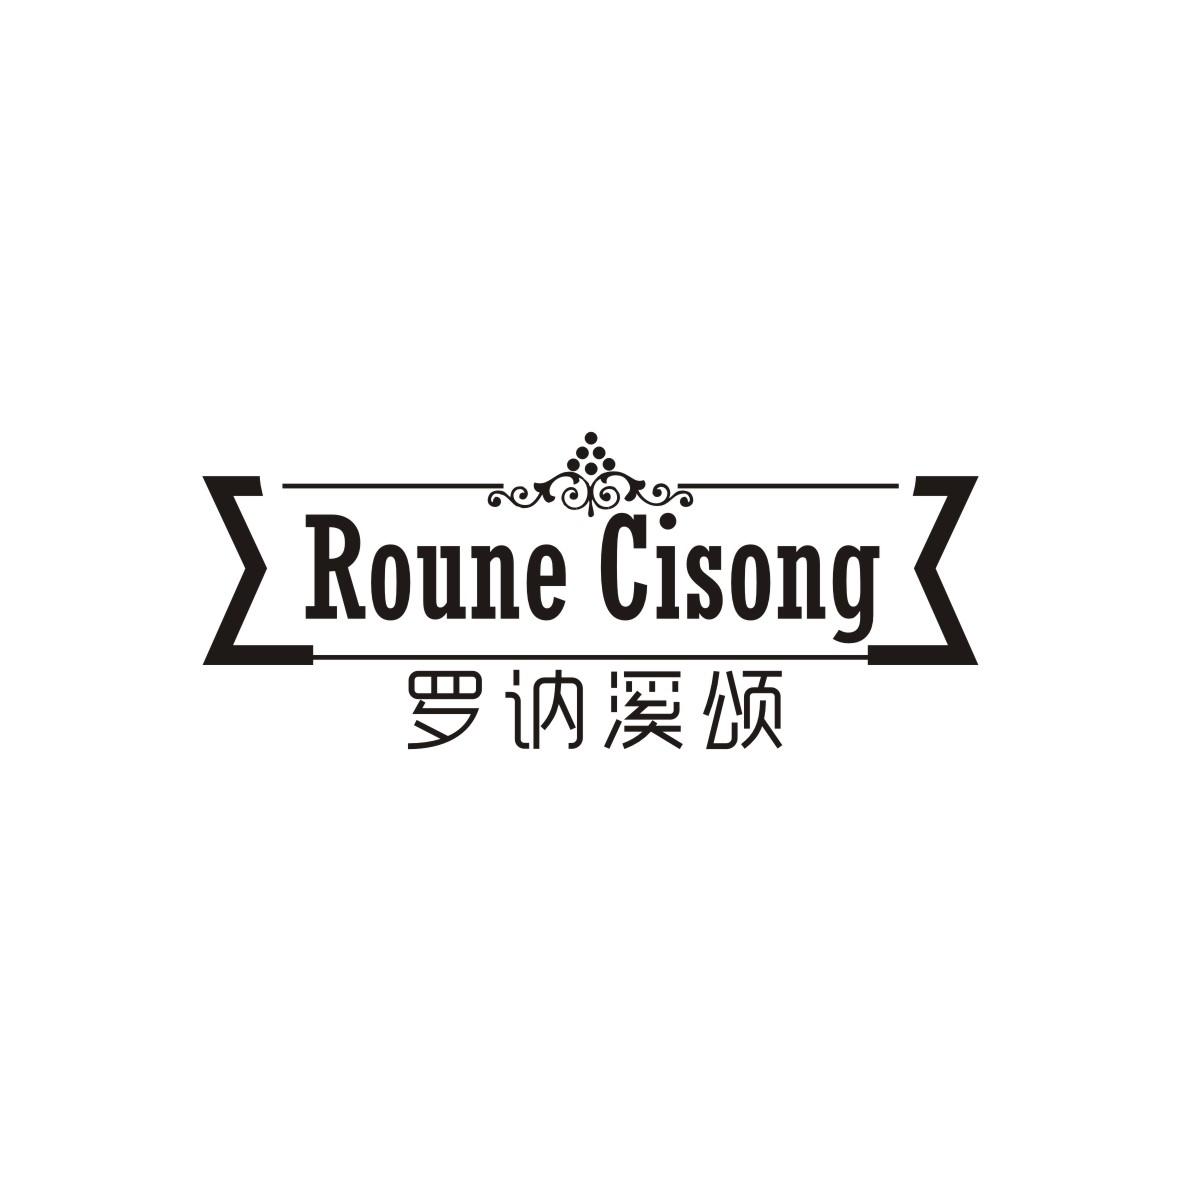 罗讷溪颂
Roune Cisong